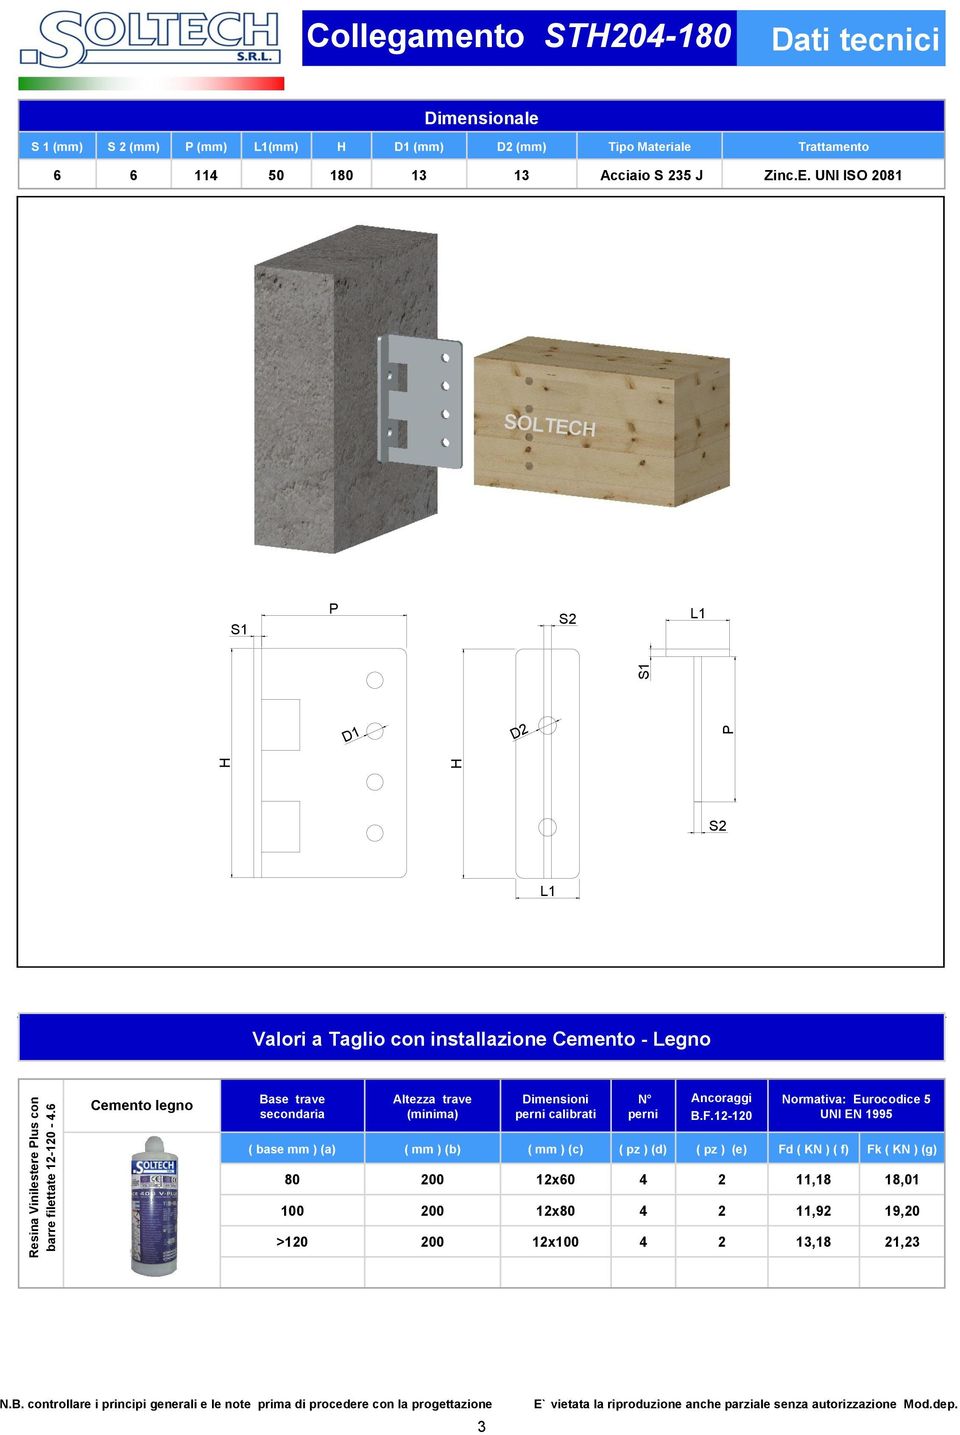 UNI ISO 2081 D1 D2 Cemento legno Base trave secondaria Altezza trave (minima) Dimensioni perni calibrati N perni Ancoraggi B.